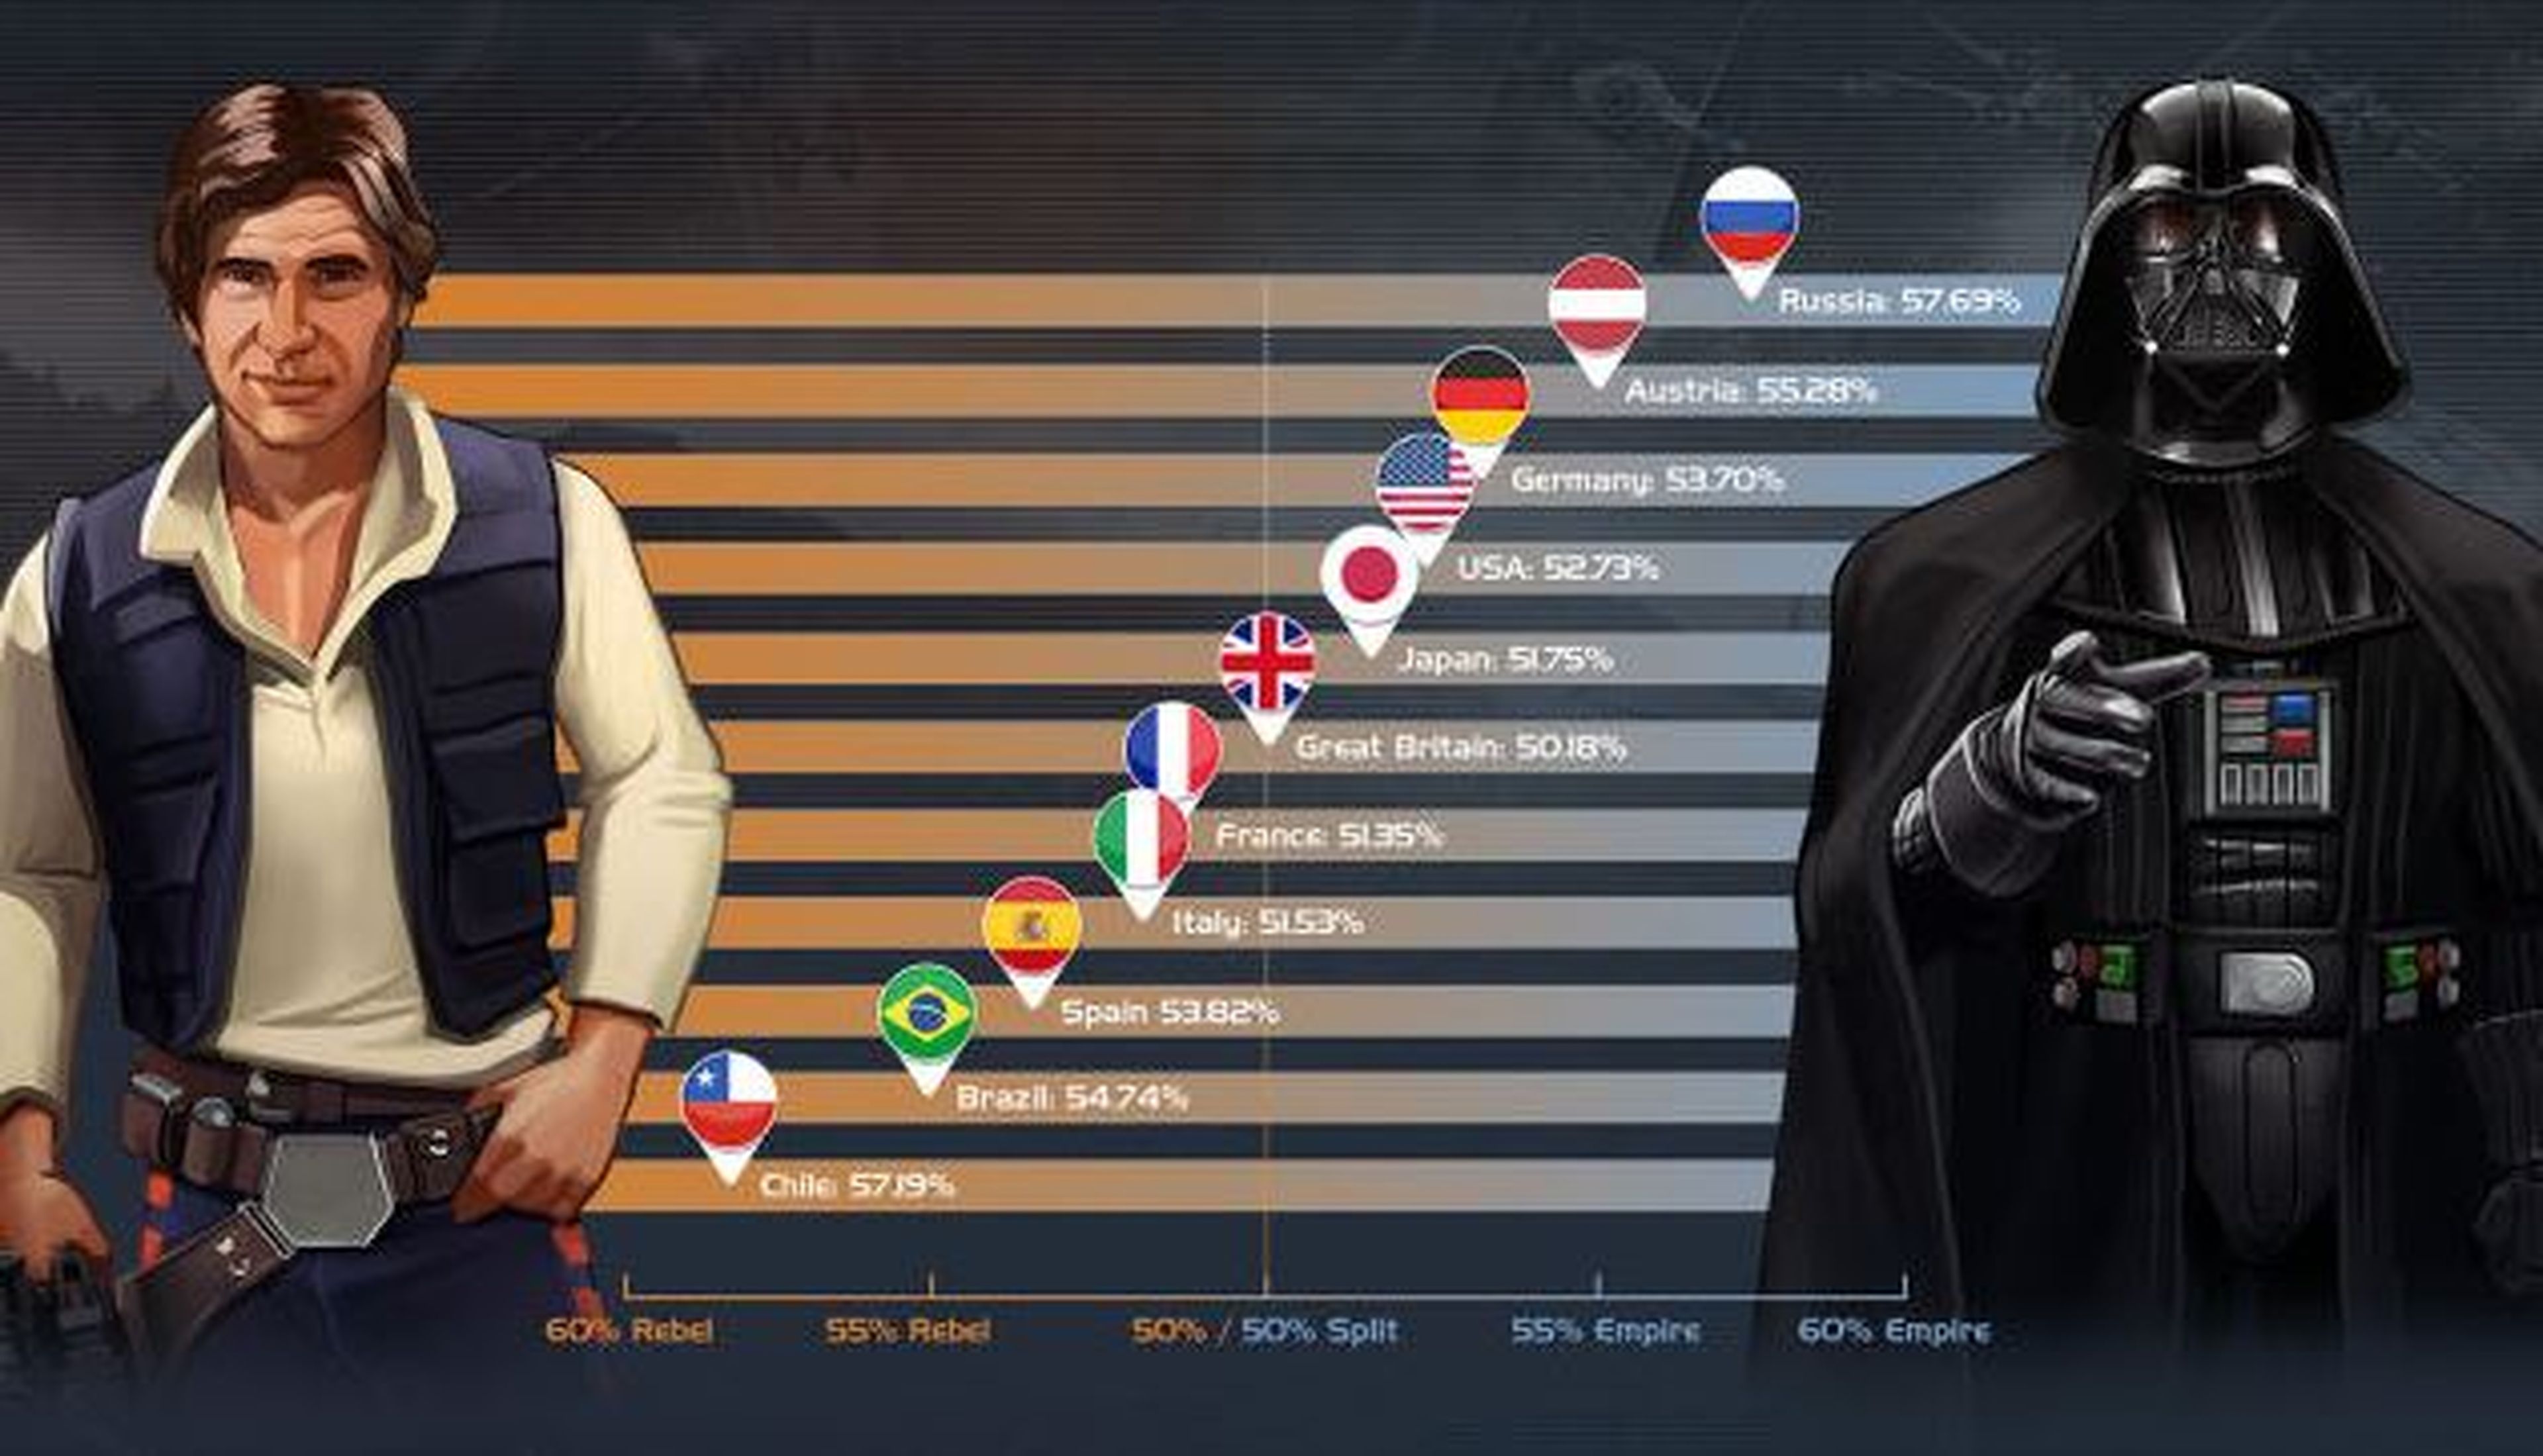 Star Wars: ¿Tú de quien eres, del imperio o de los rebeldes?